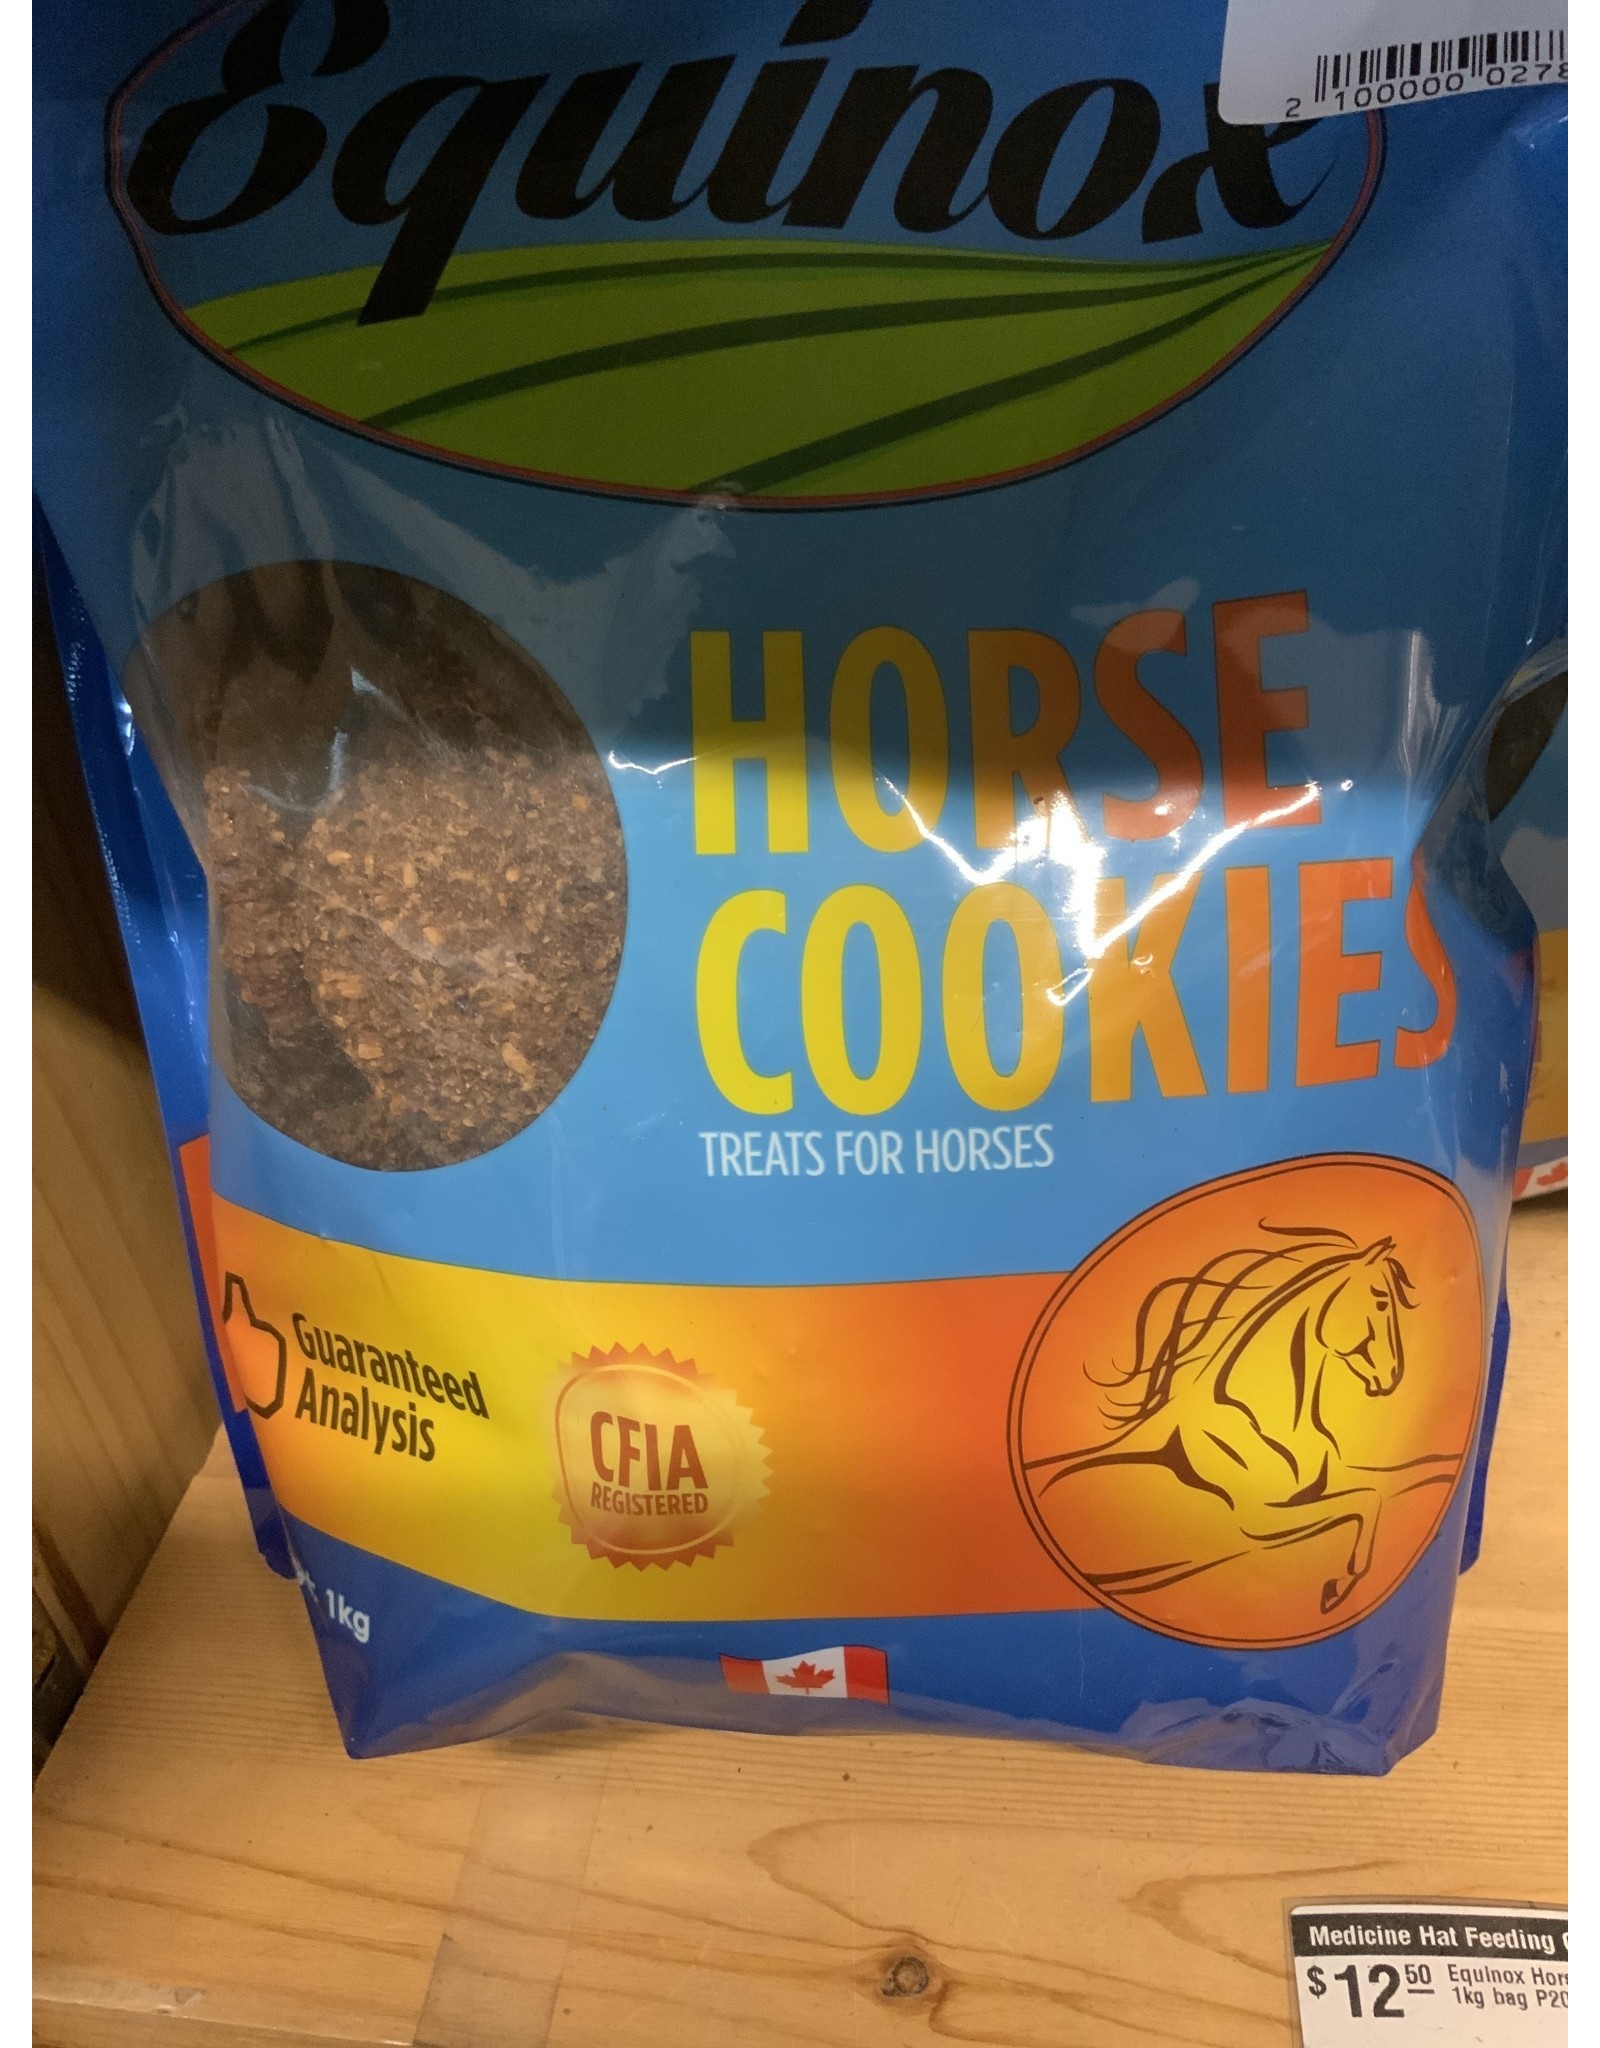 Equinox Horse Cookies - 1kg bag P2001 (Orders Case of 12) - Treat